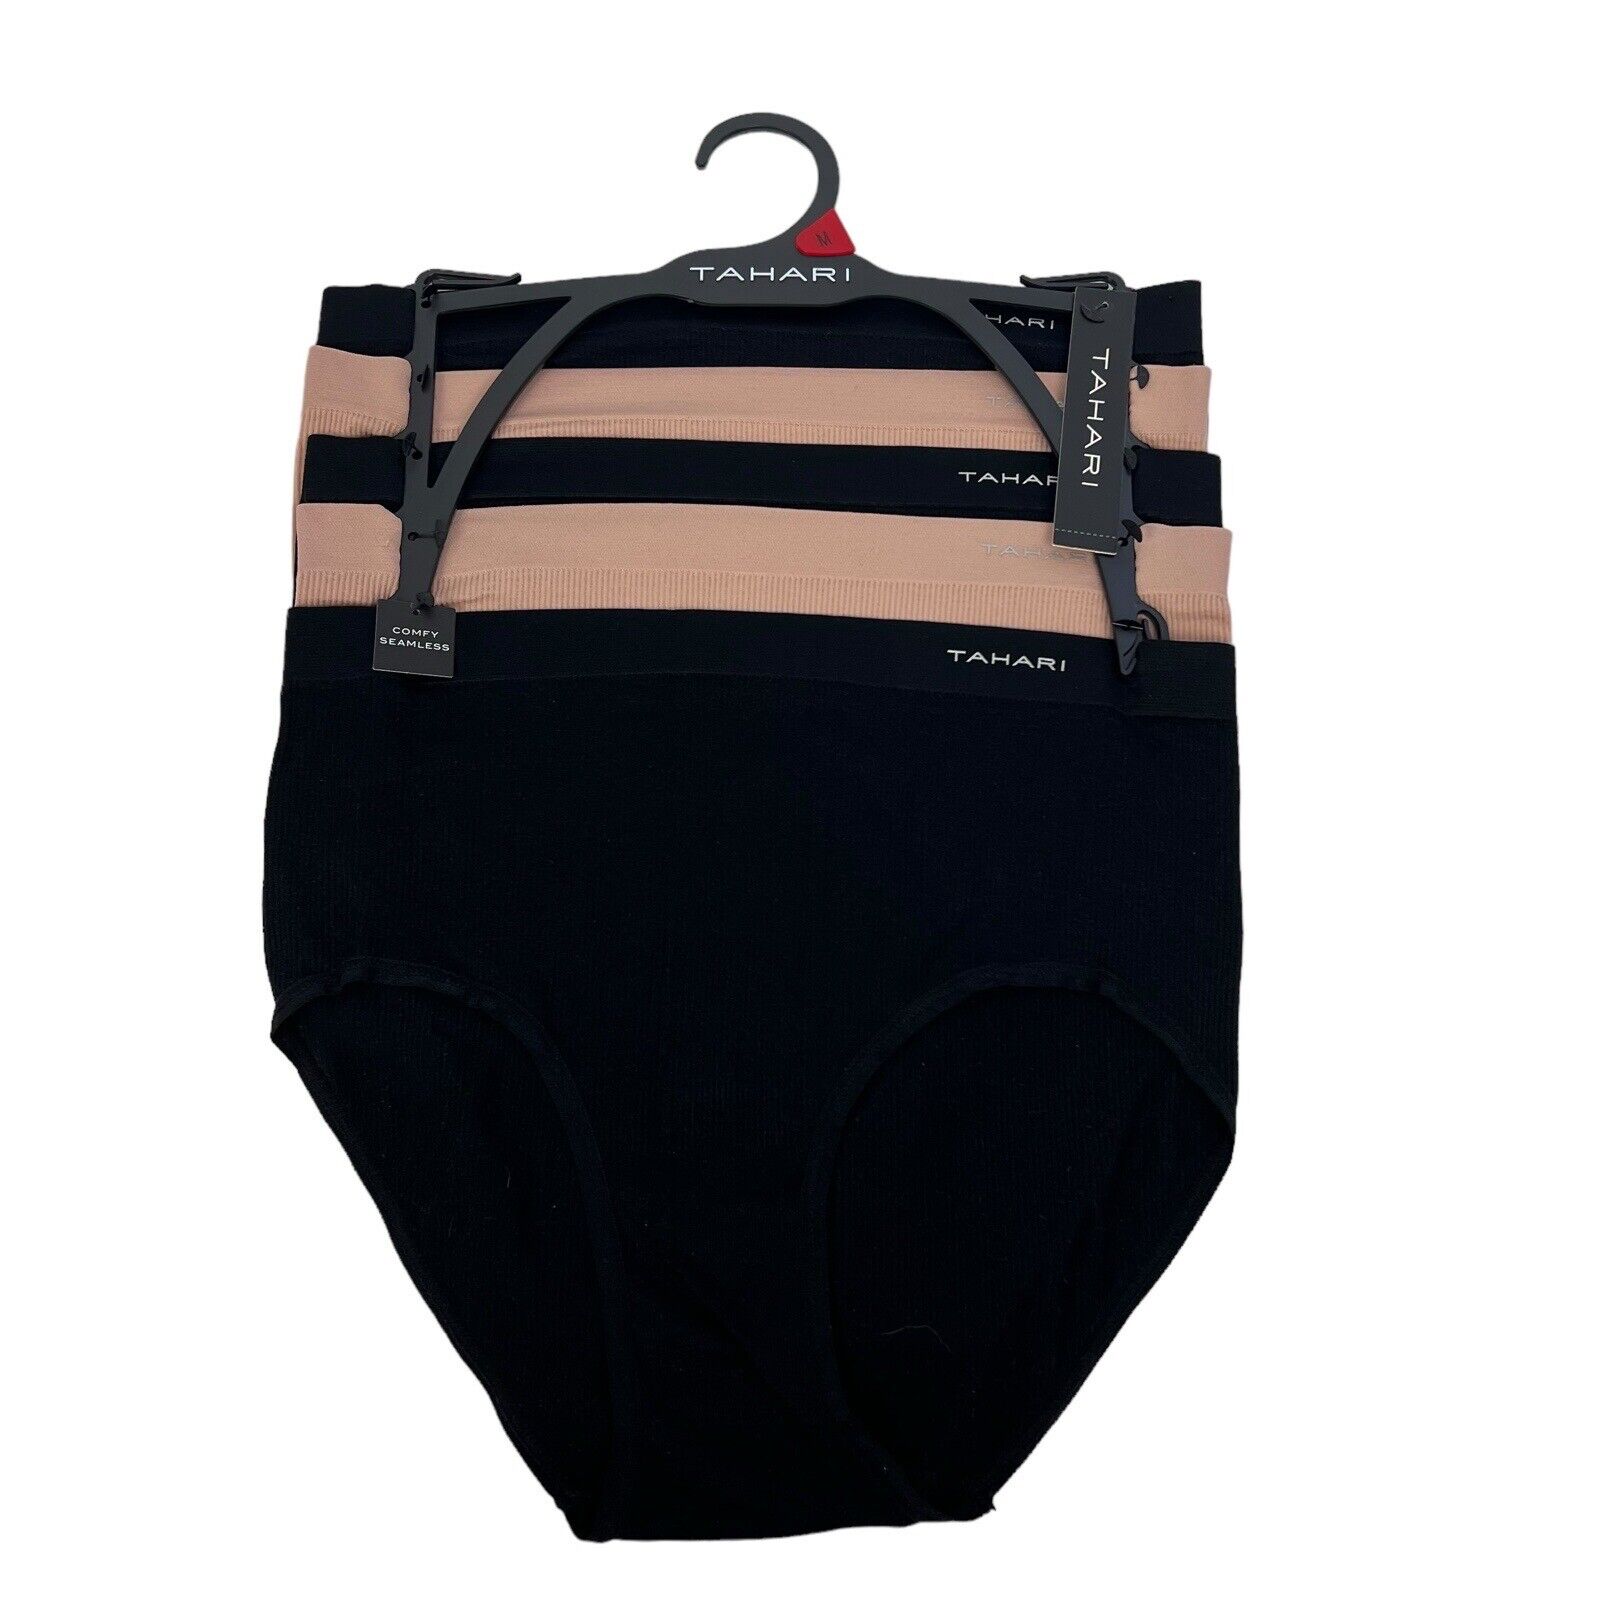 Tahari Women's Panties Sz Medium Pkg/5 Comfy Seamless Briefs